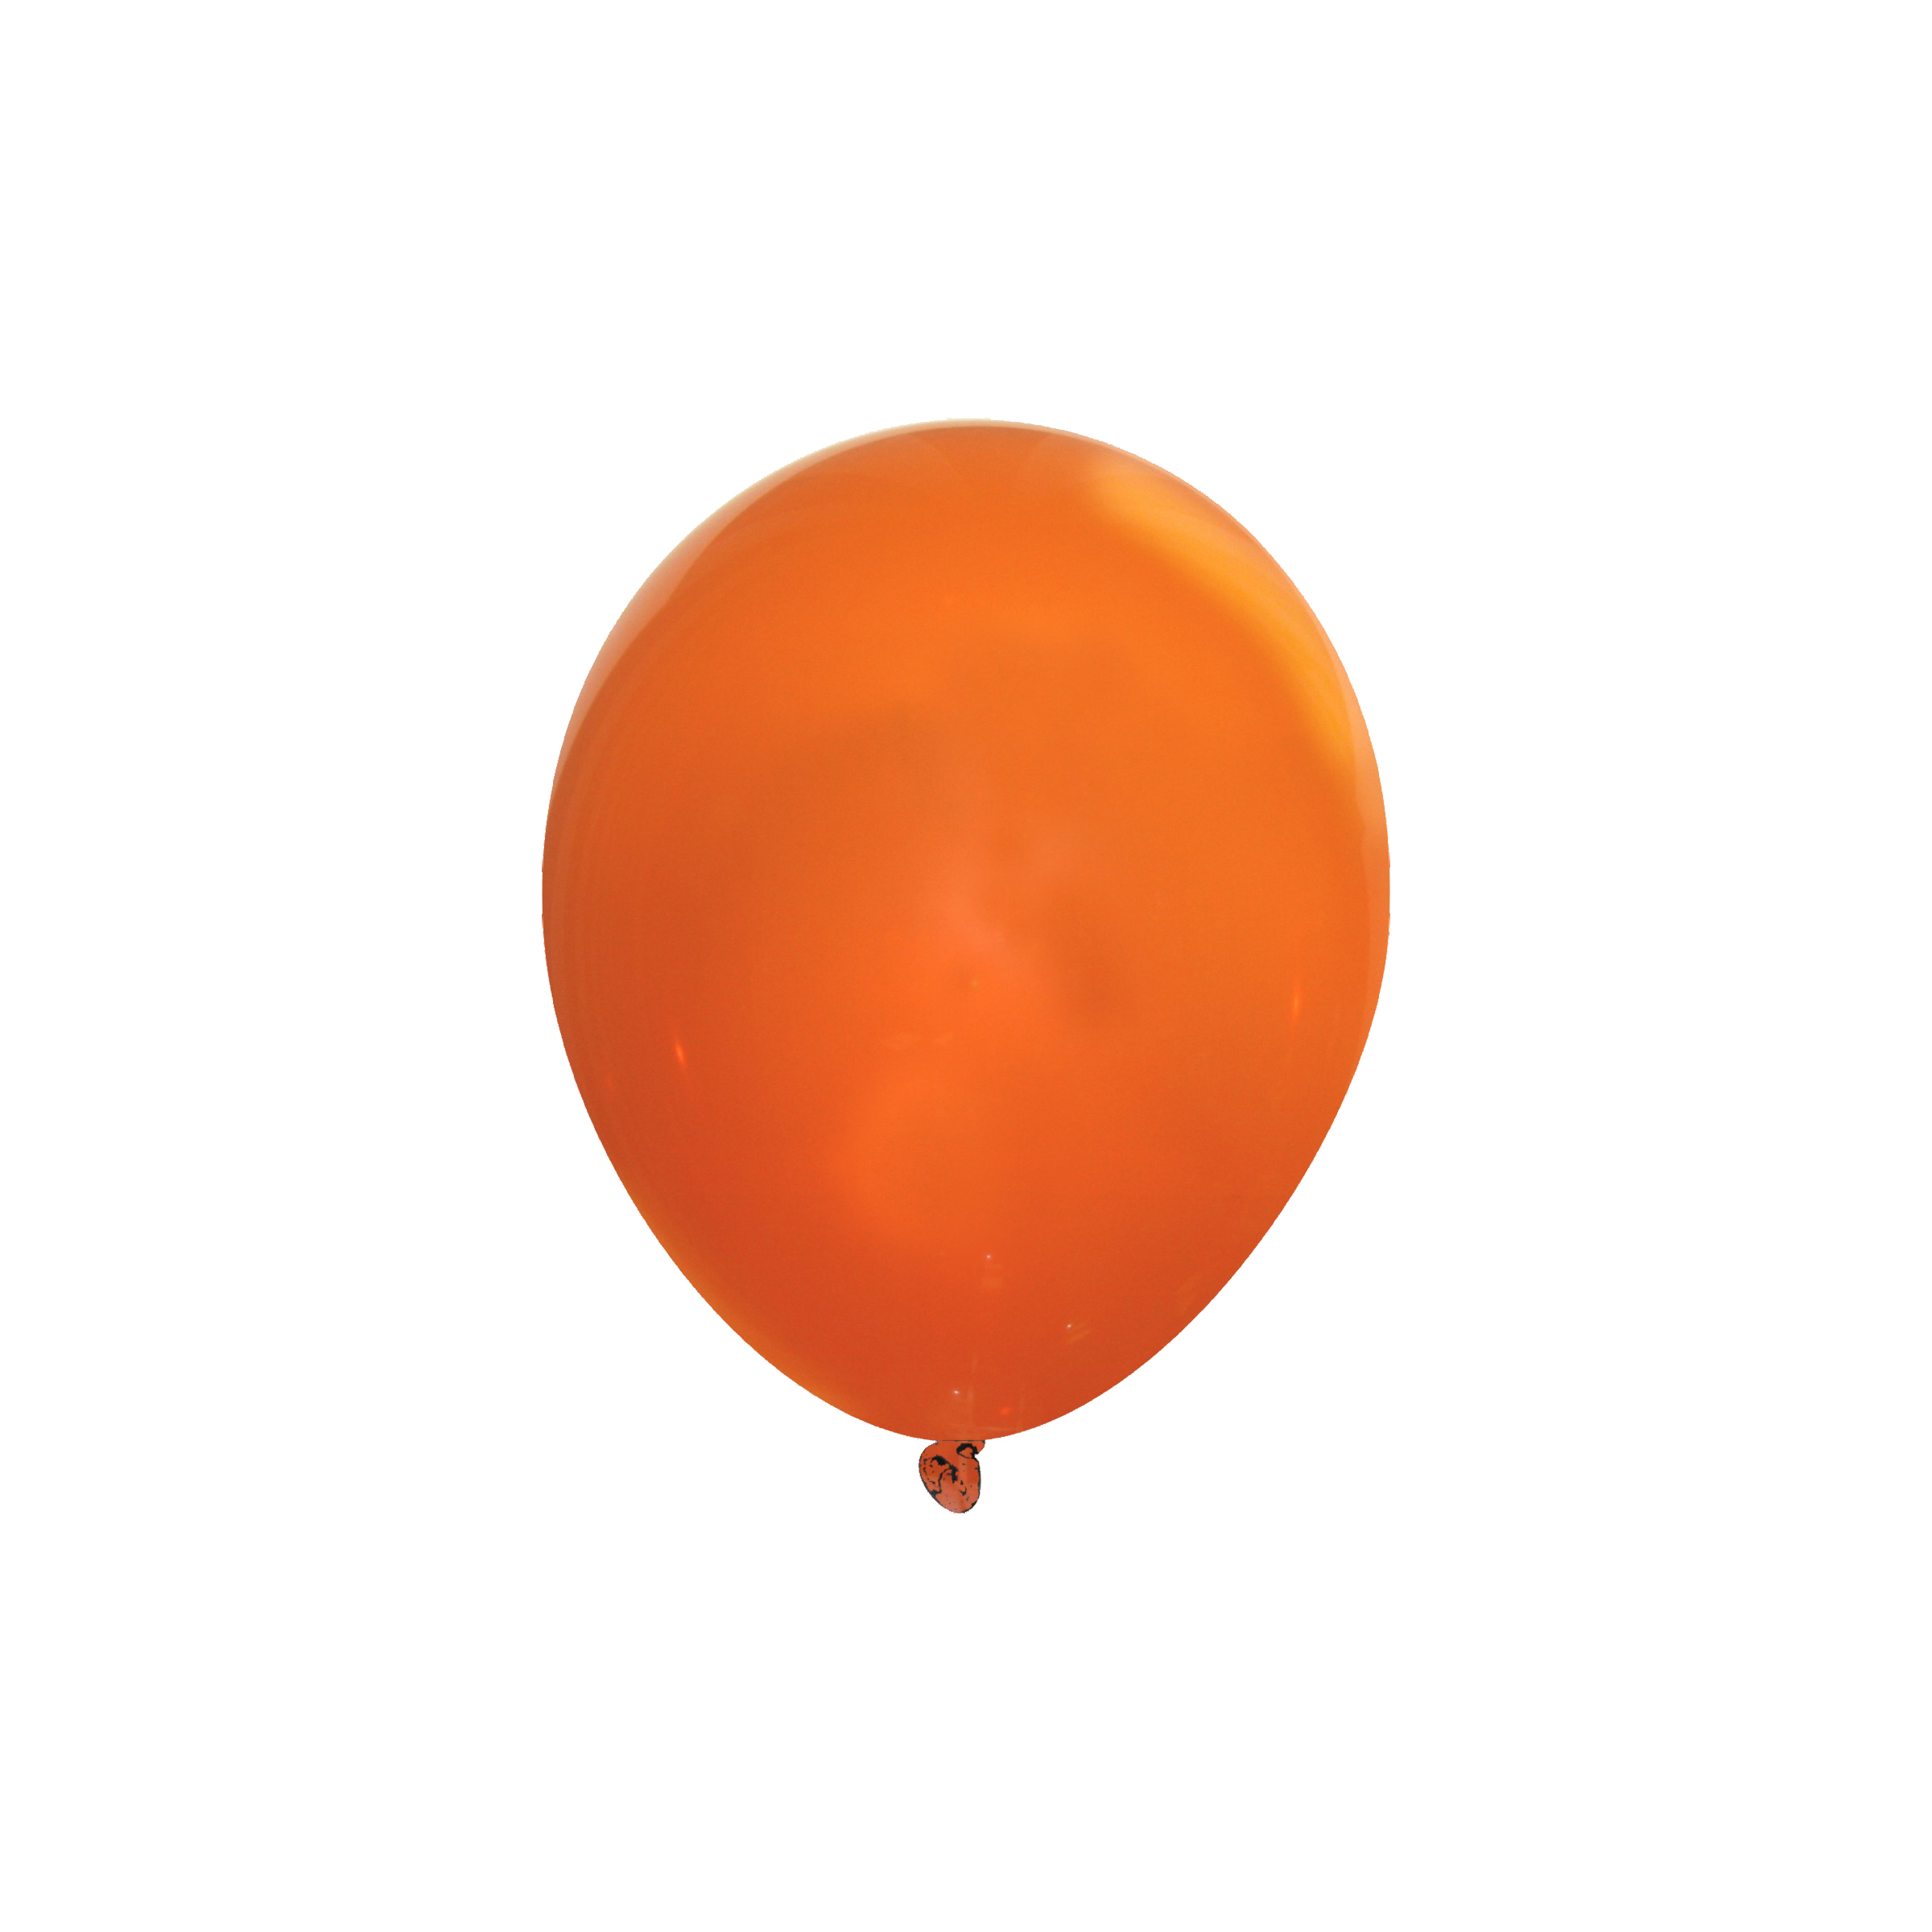 Orange Balloon Clip Art